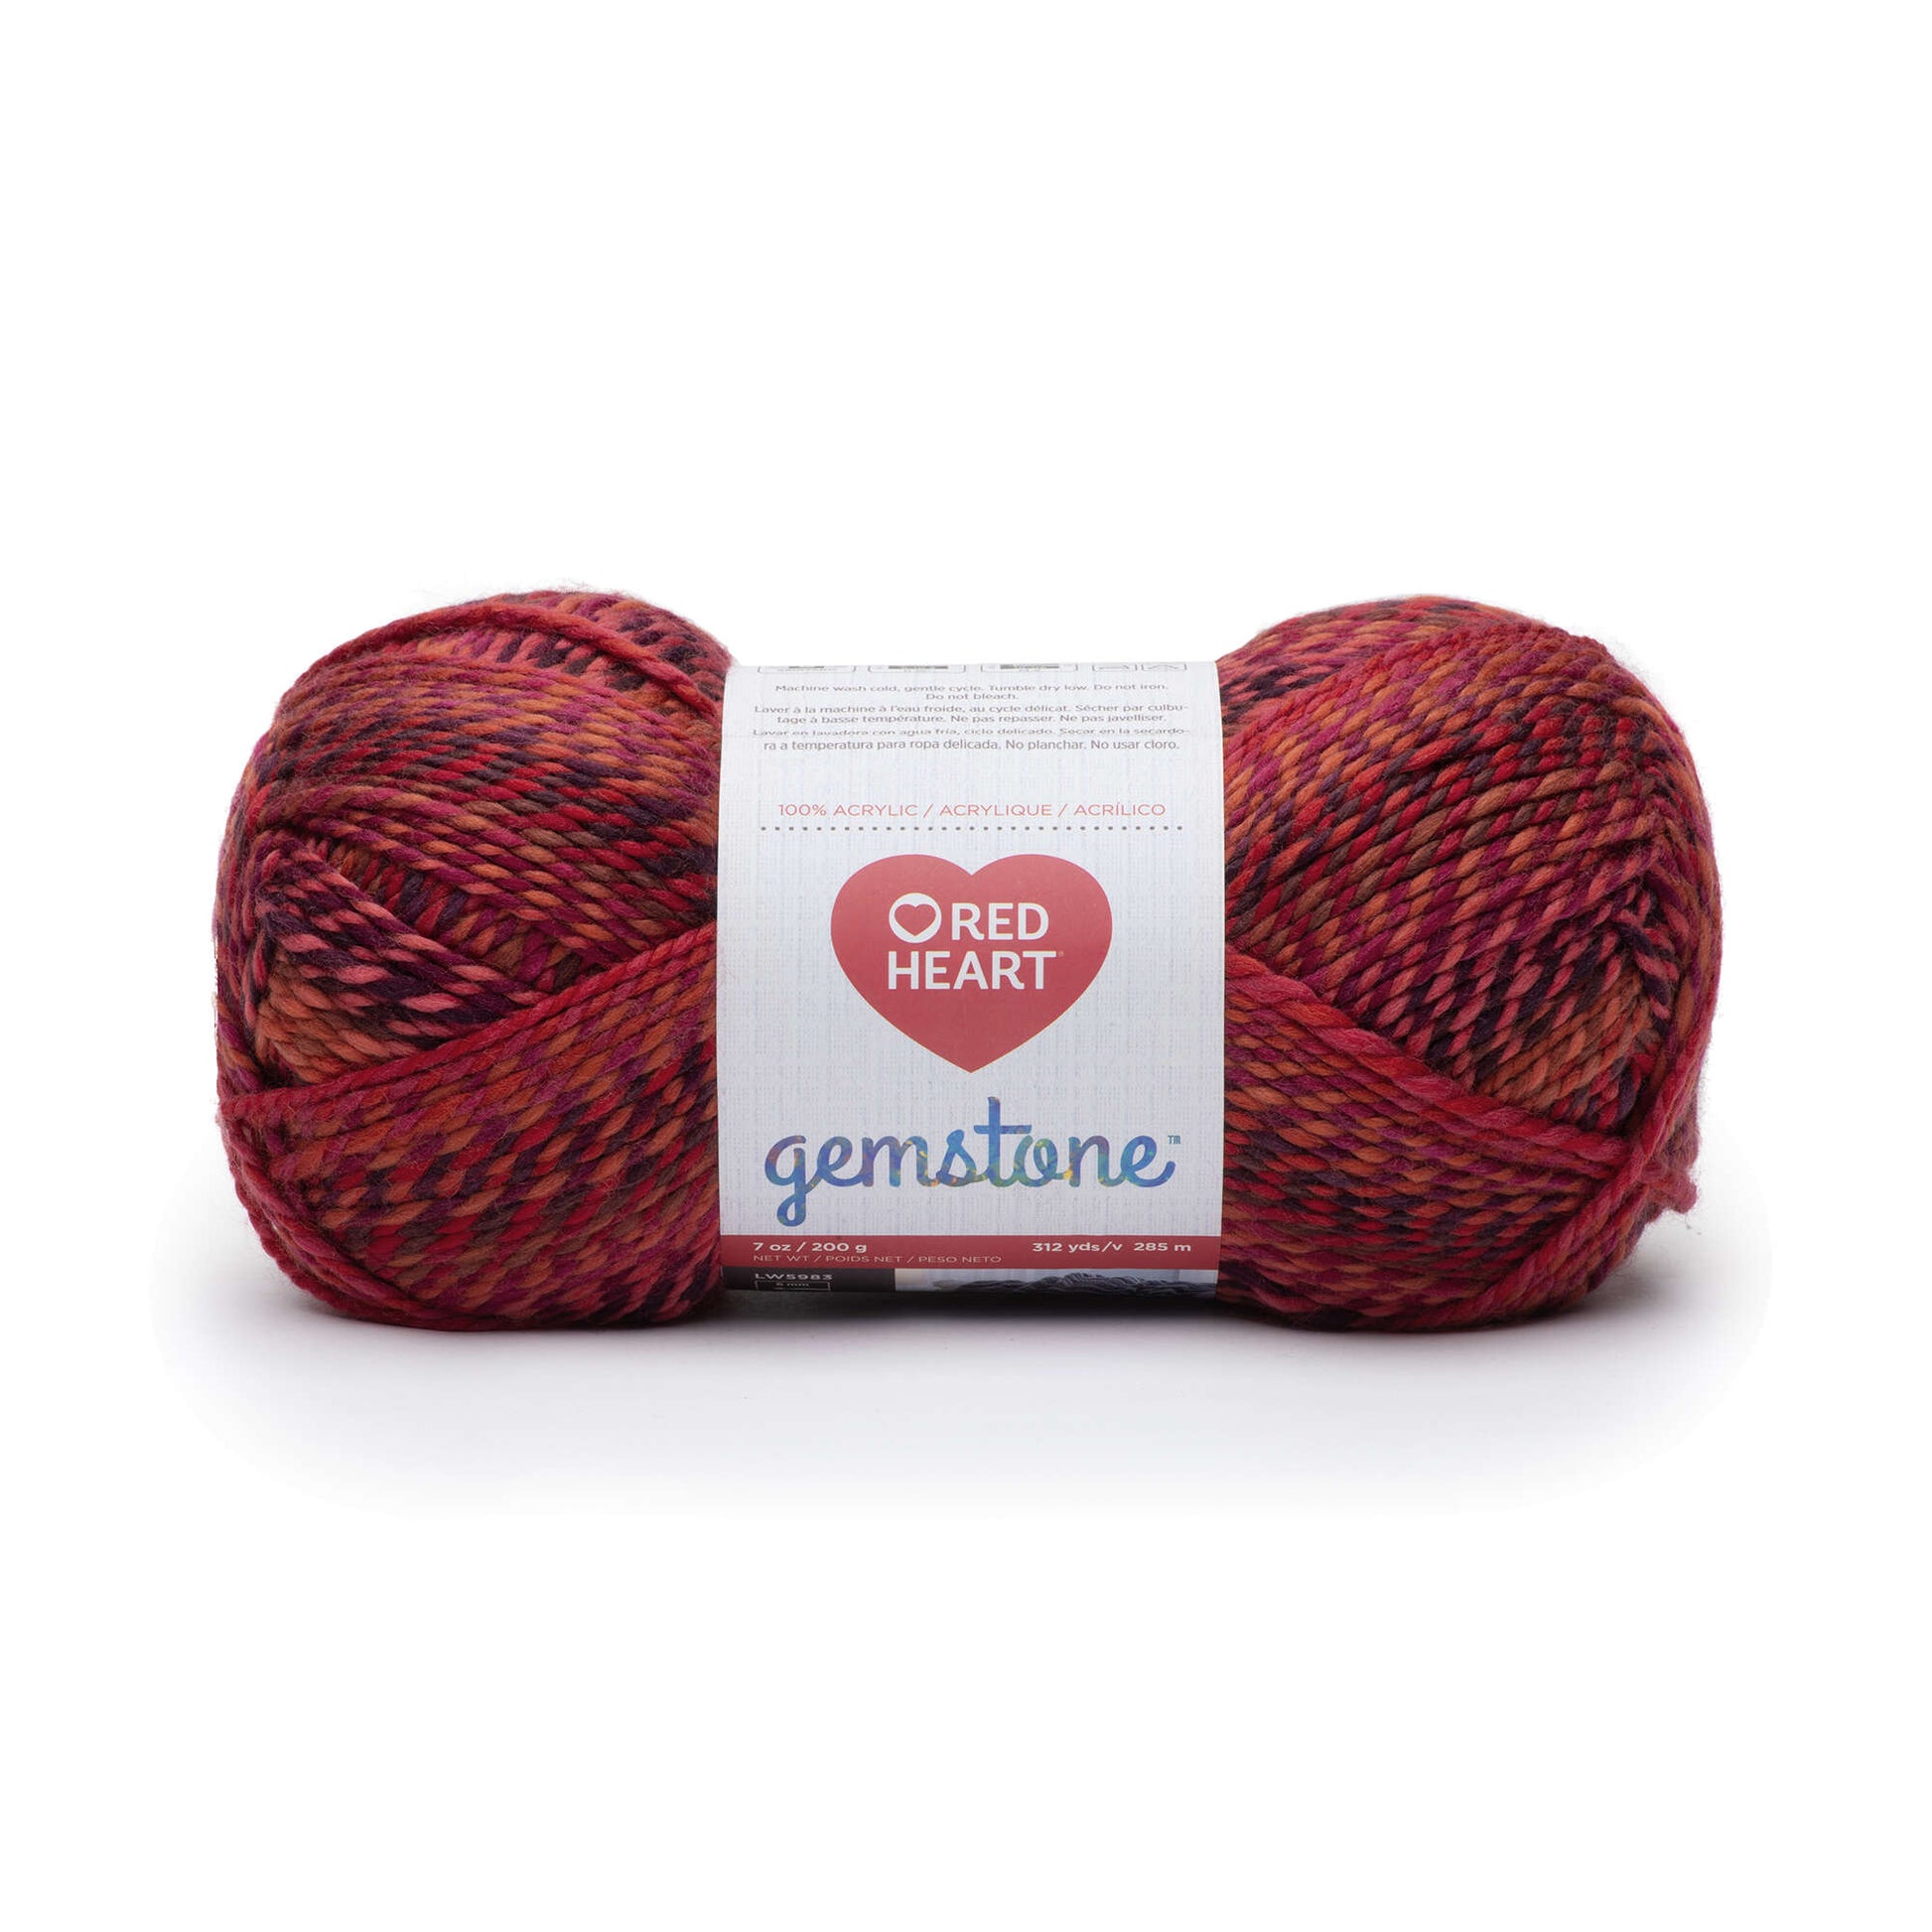 Red Heart Gemstone Yarn